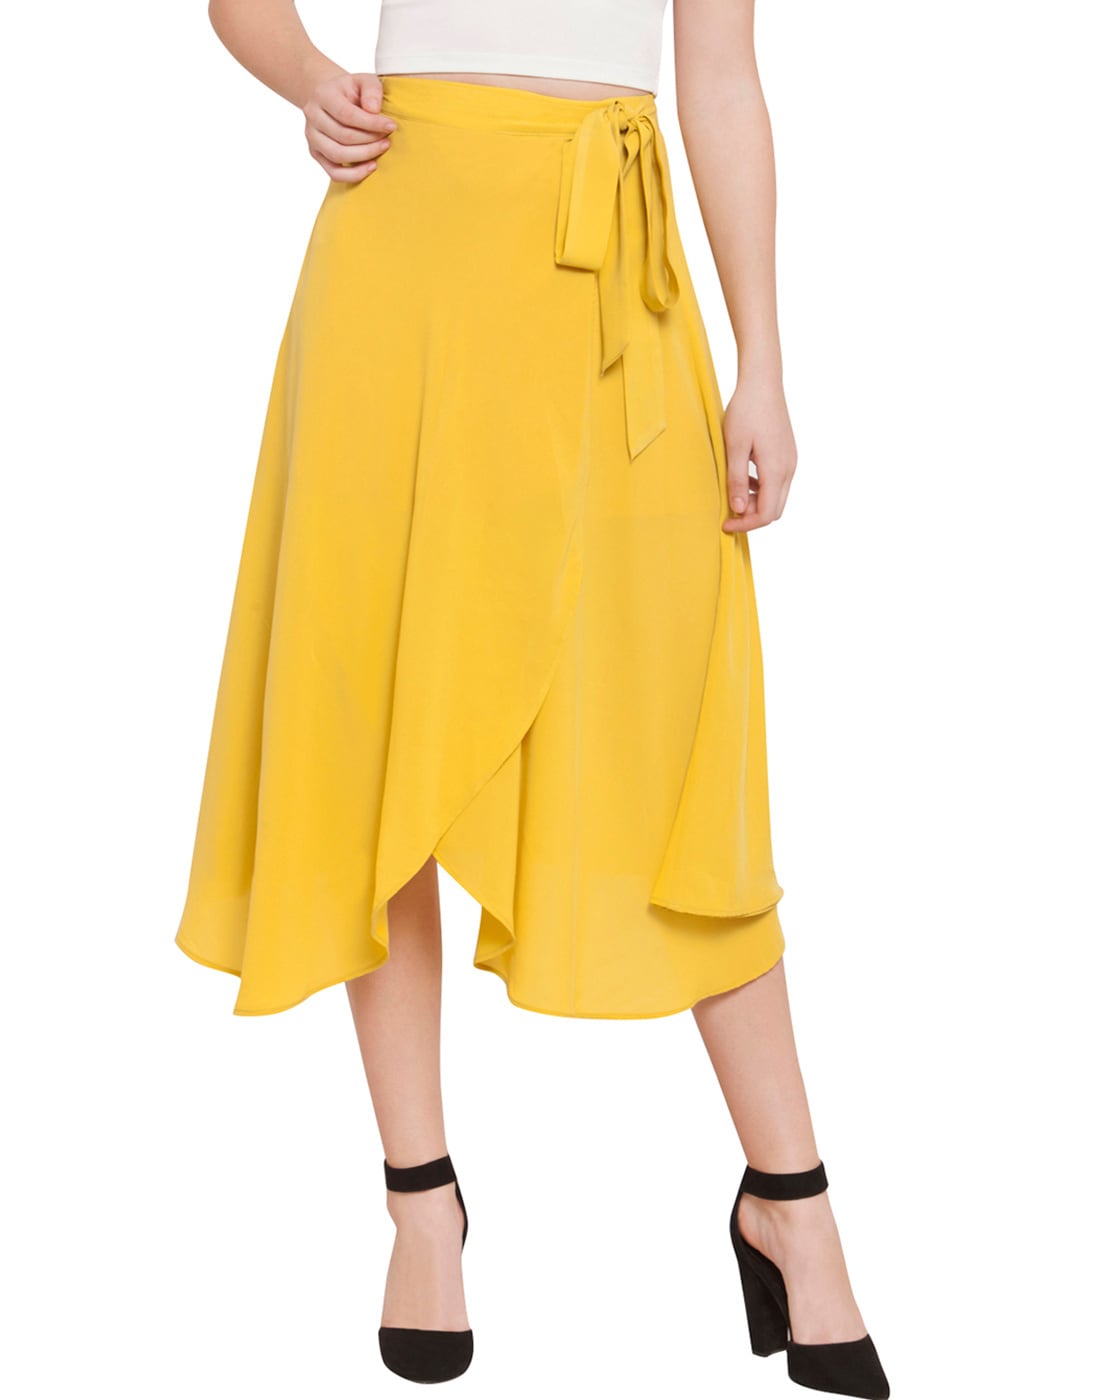 50s Style High Low Skirt, Full 50s Skirt, Hi Lo Skirt, Yellow Ruffle Skirt,  Yellow Bridesmaid Skirt, Prom Skirt, Asymmetrical Skirt - Etsy